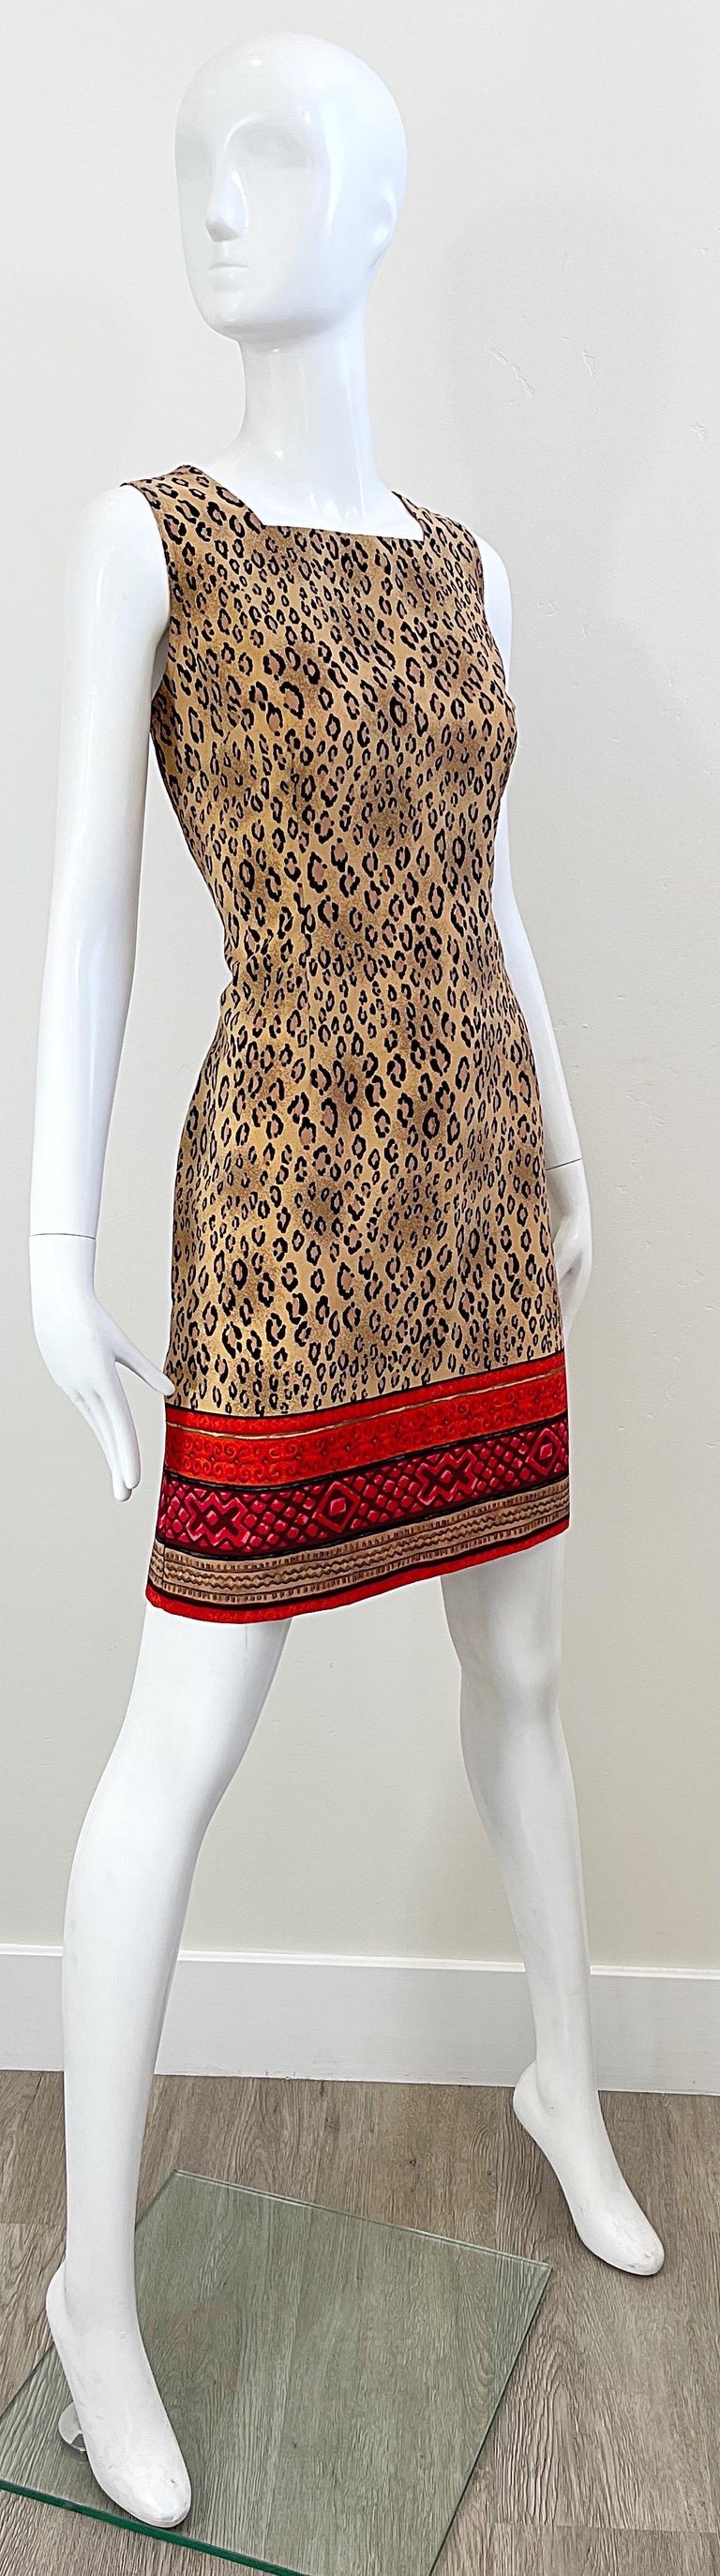 1990s Christian Lacroix Leopard Cheetah Animal Print Size 8 Vintage 90s Dress For Sale 7